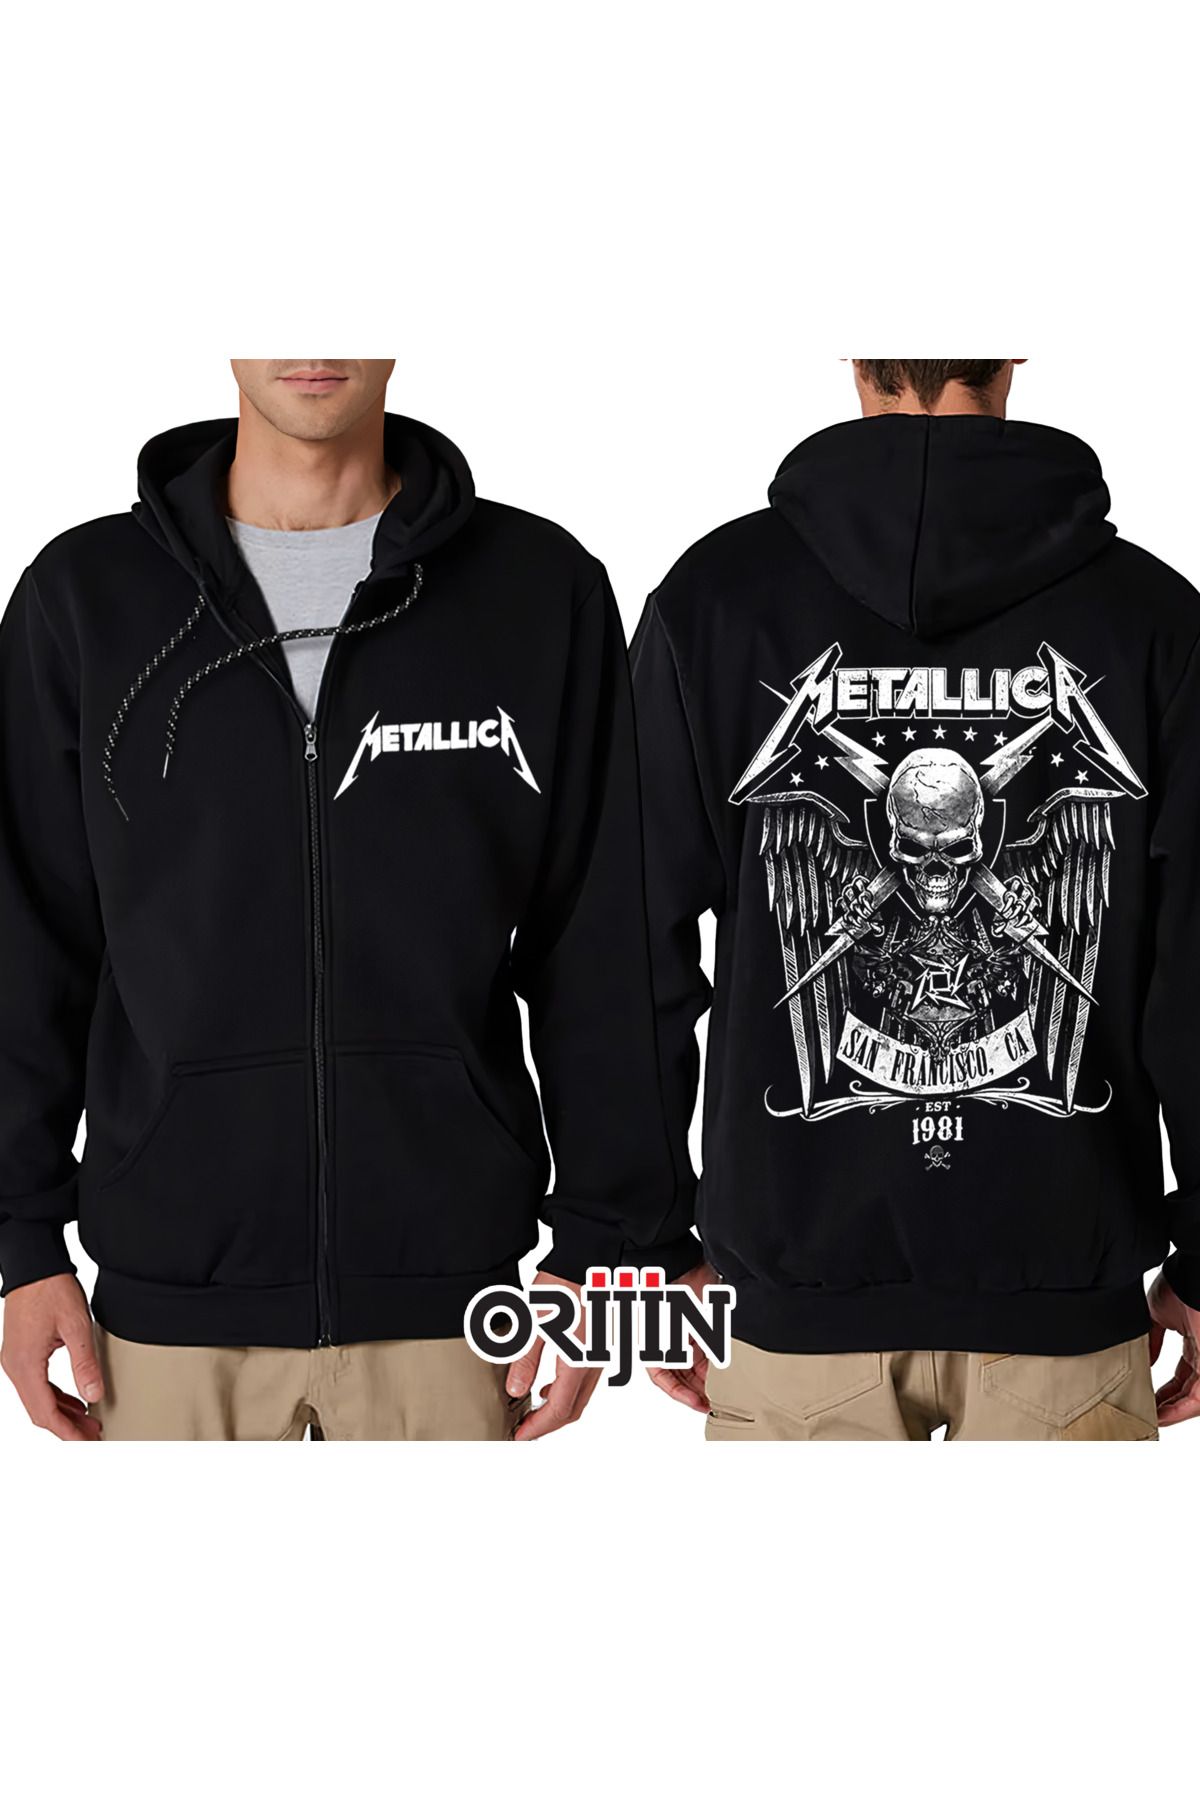 Orijin Tekstil Metallica San Francisco Est 1981 Ön Arka Baskılı Fermuarlı Kapüşonlu Siyah Sweatshirt